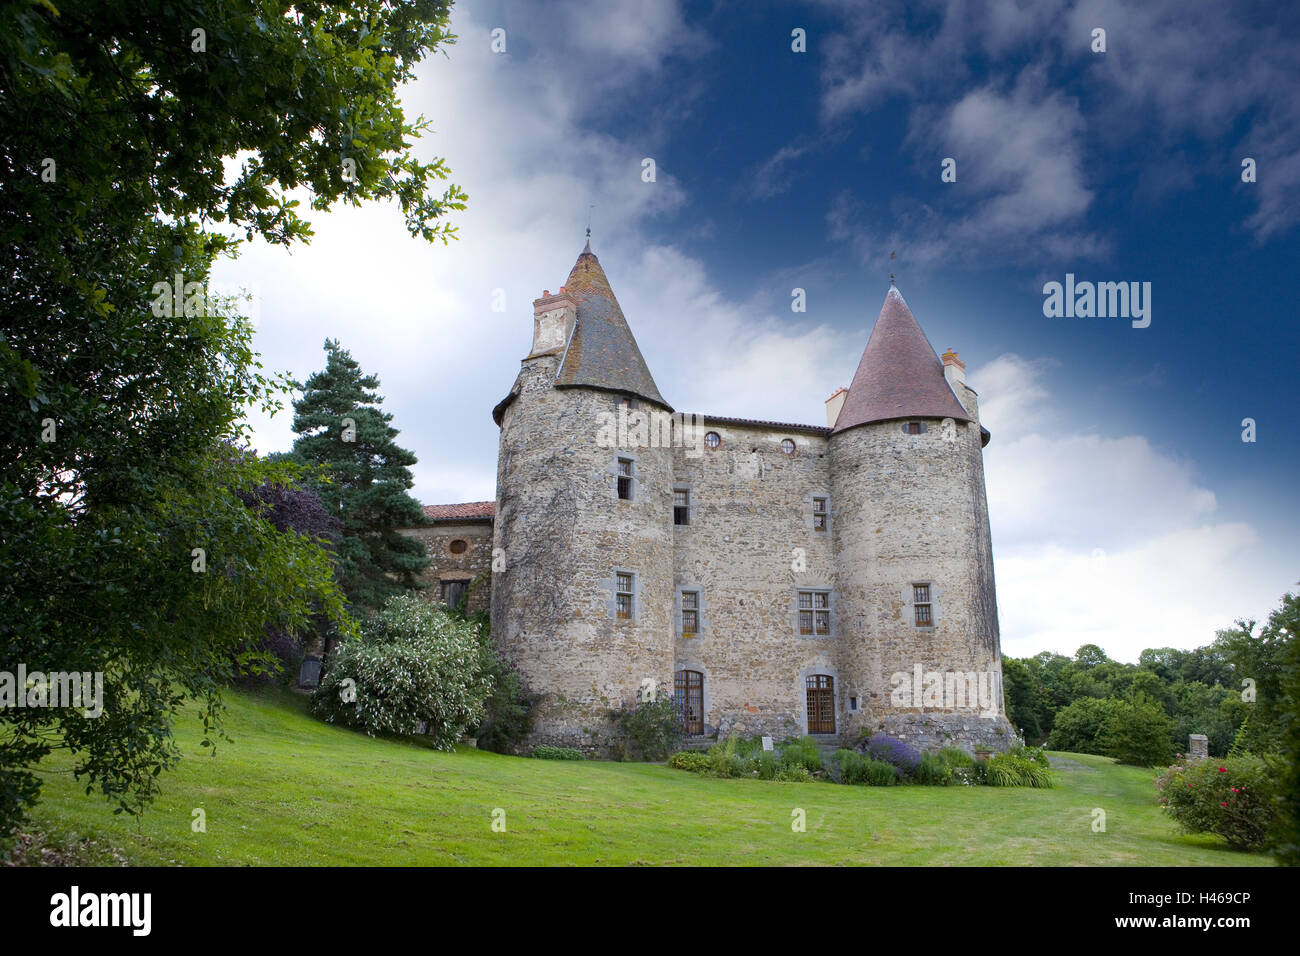 France, Auvergne, Haute-Loire, Brioude, Chateau de reading pinnace, twin towers, Stock Photo